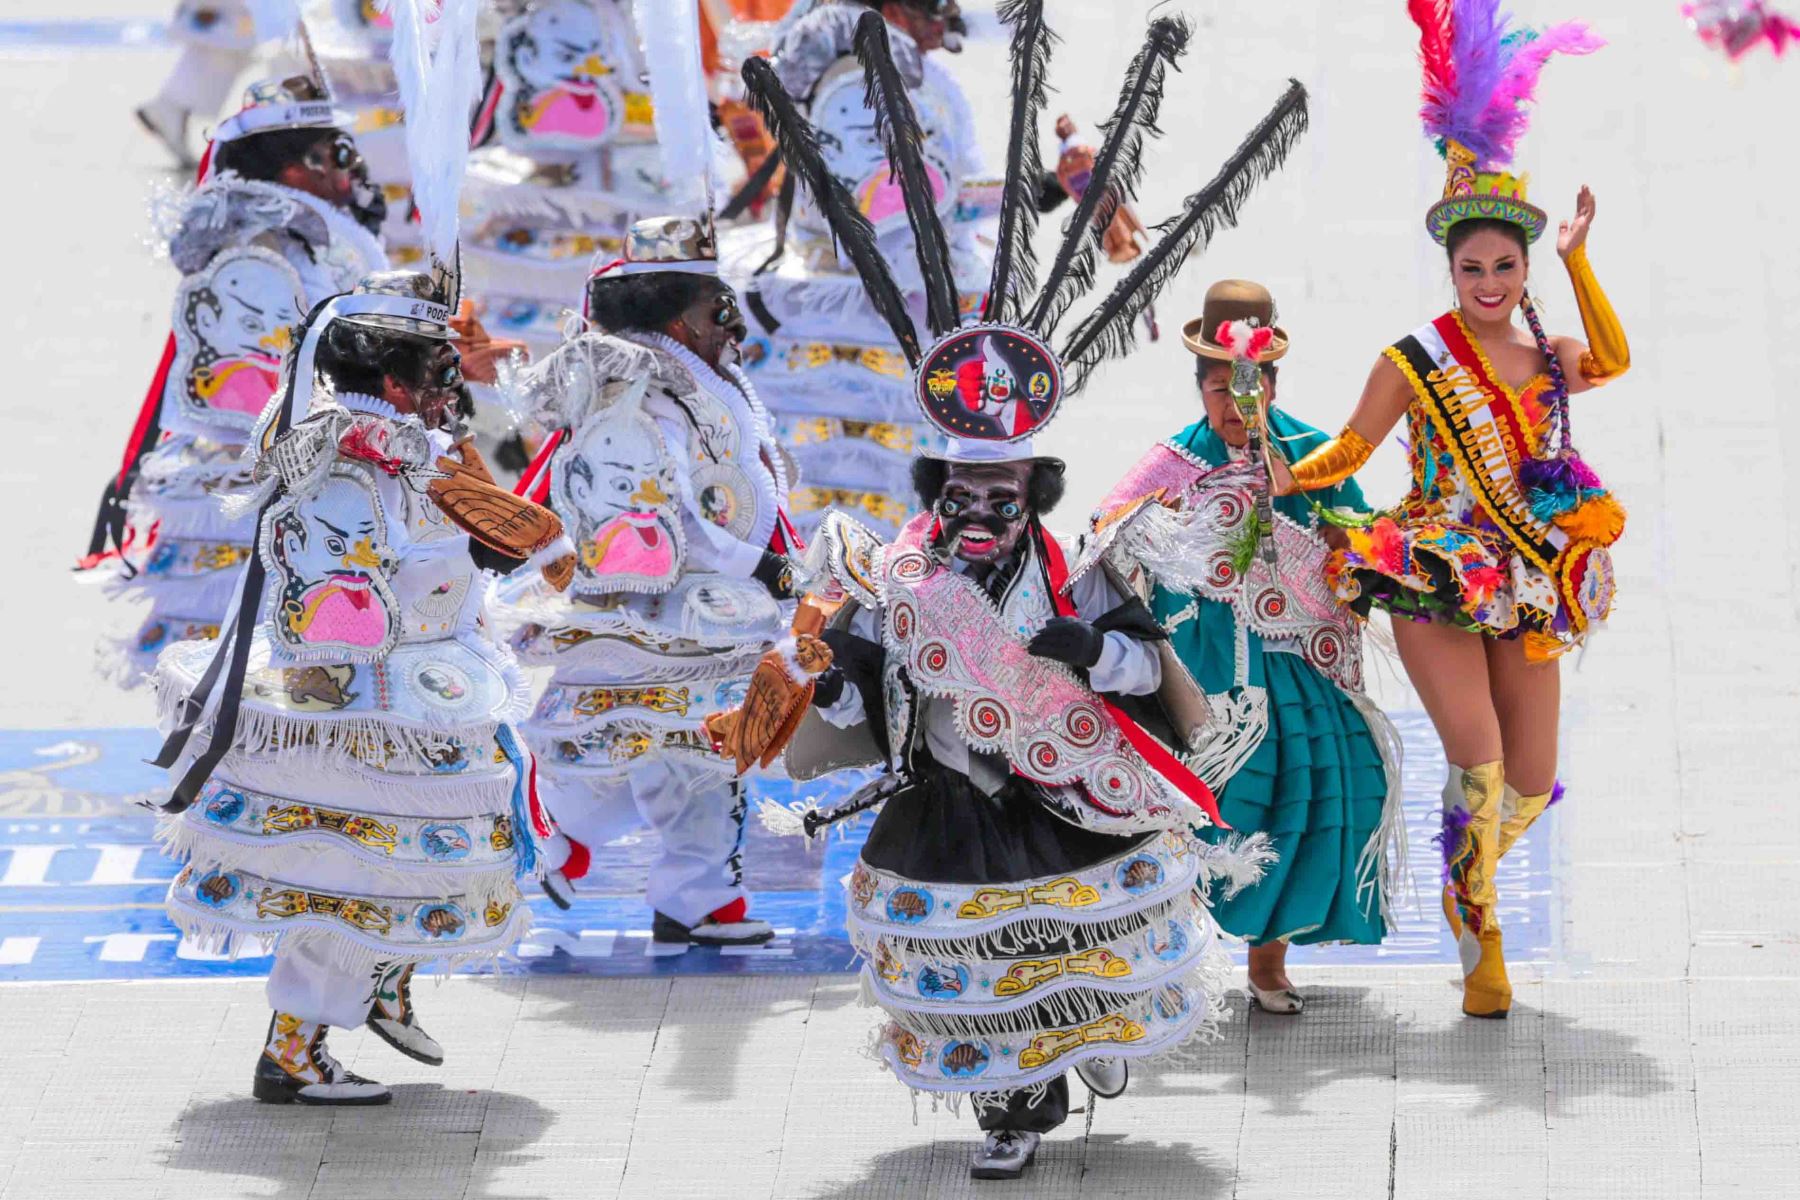 La festividad de la Virgen de la Candelaria es la celebración más fastuosa del calendario jubilar de la región Puno y del Perú y una de las más importantes de América. ANDINA/Carlos Lezama Villantoy